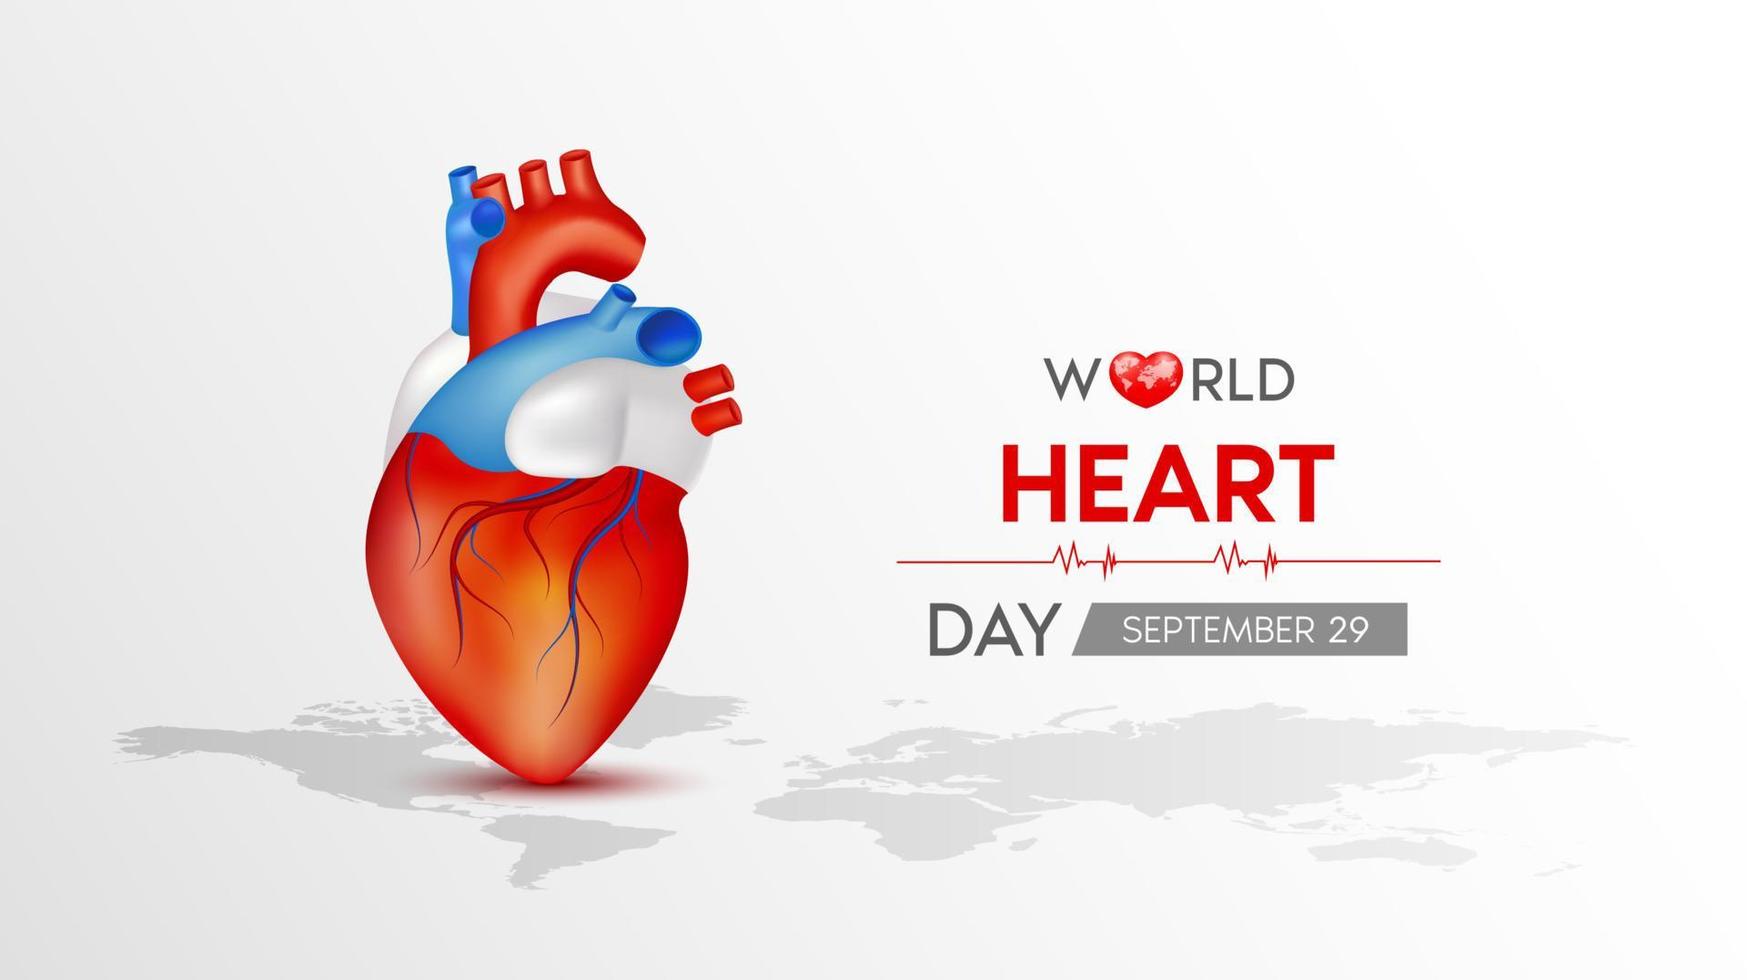 día mundial del corazón. corazón rojo con mapa del mundo blanco. banner de fondo abstracto del latido del corazón, onda del corazón. Ilustración vectorial 3d. vector